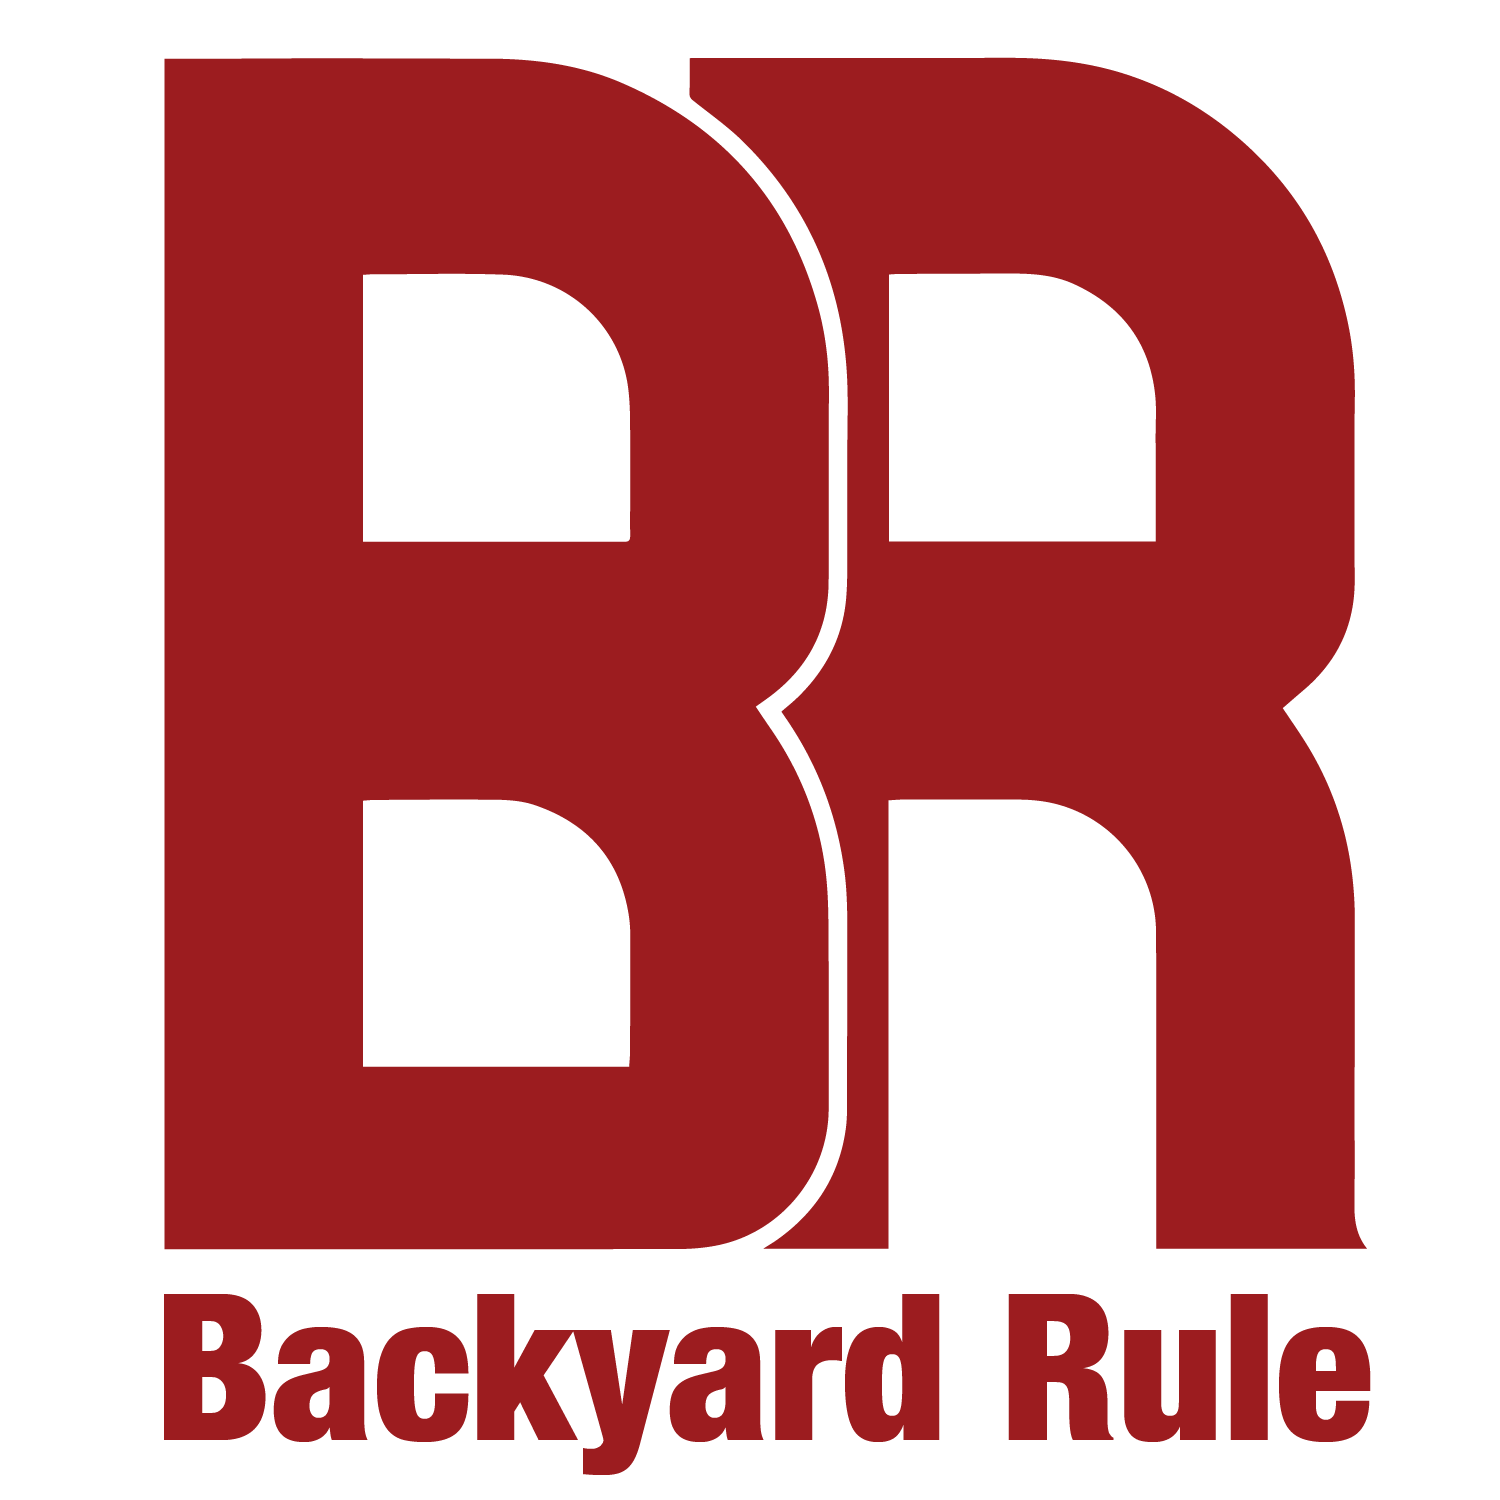 Backyard Rule